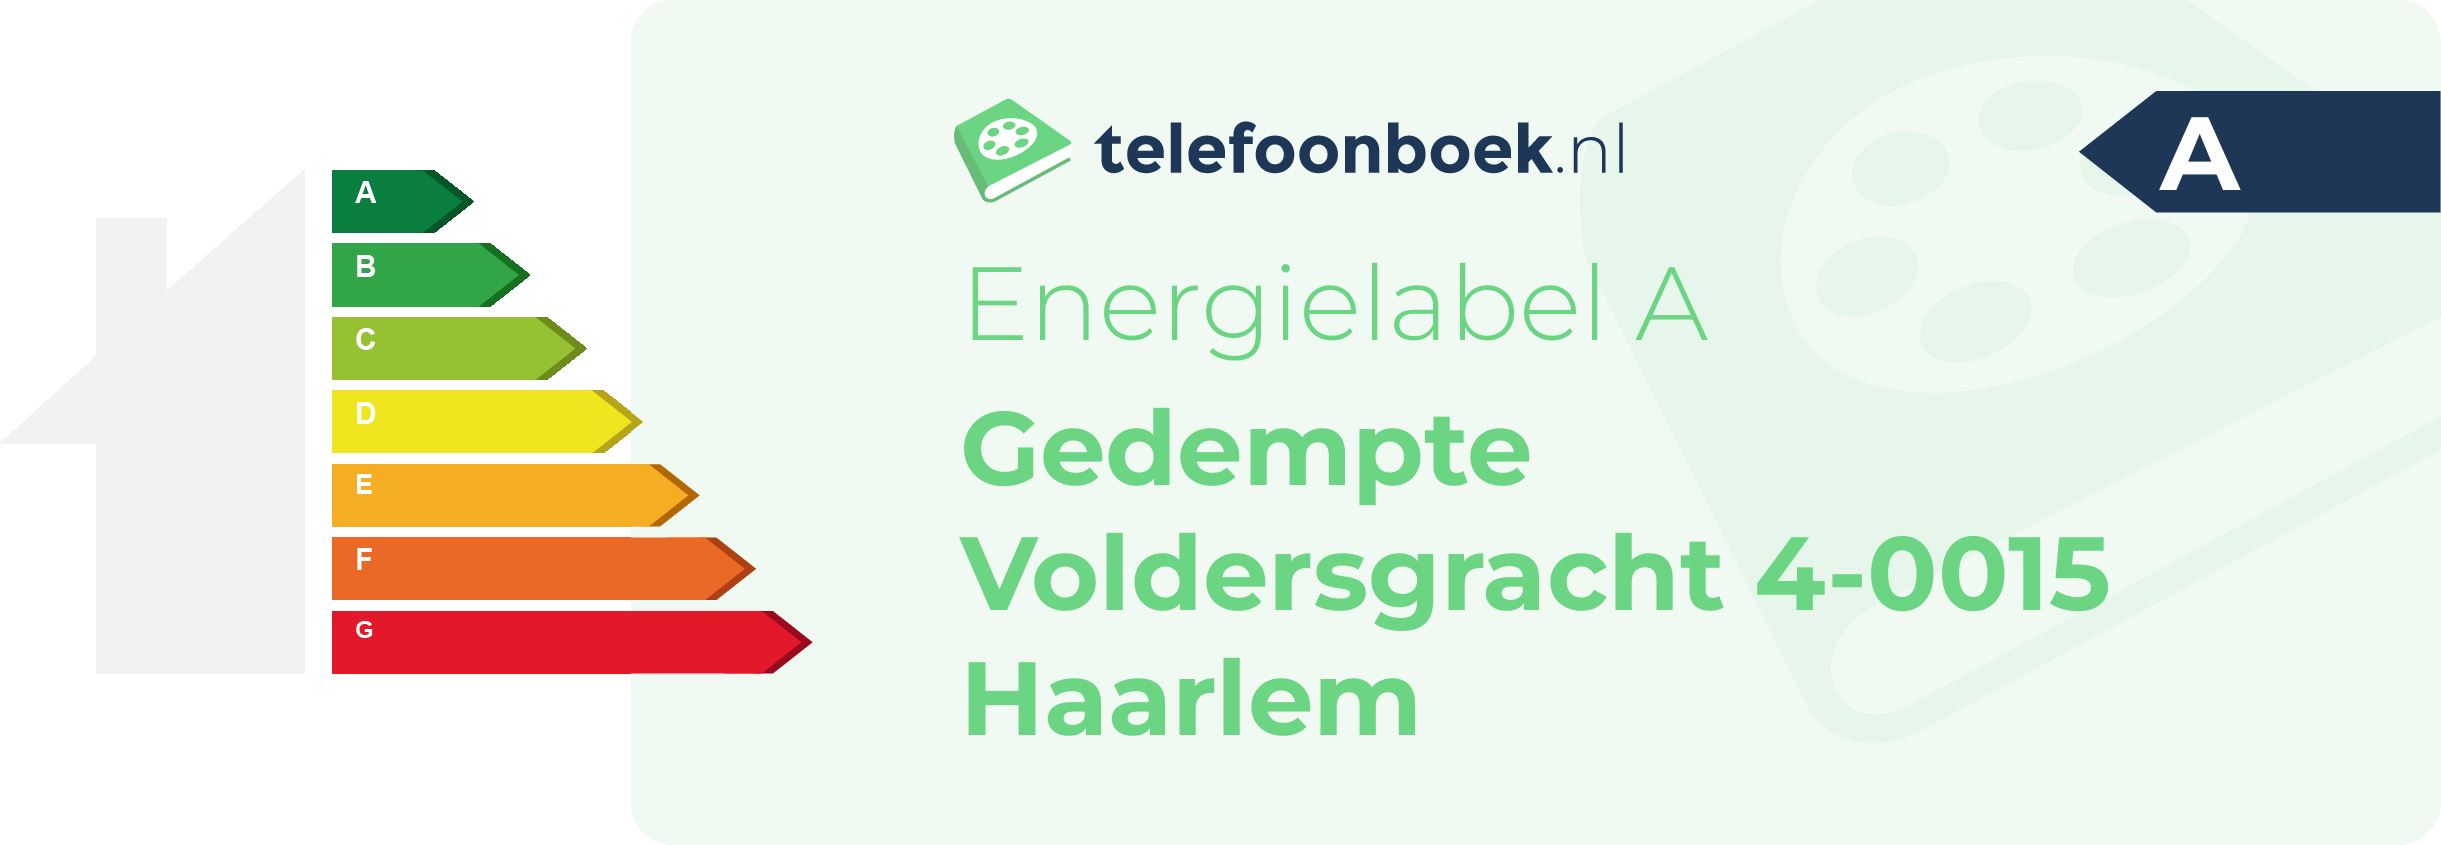 Energielabel Gedempte Voldersgracht 4-0015 Haarlem